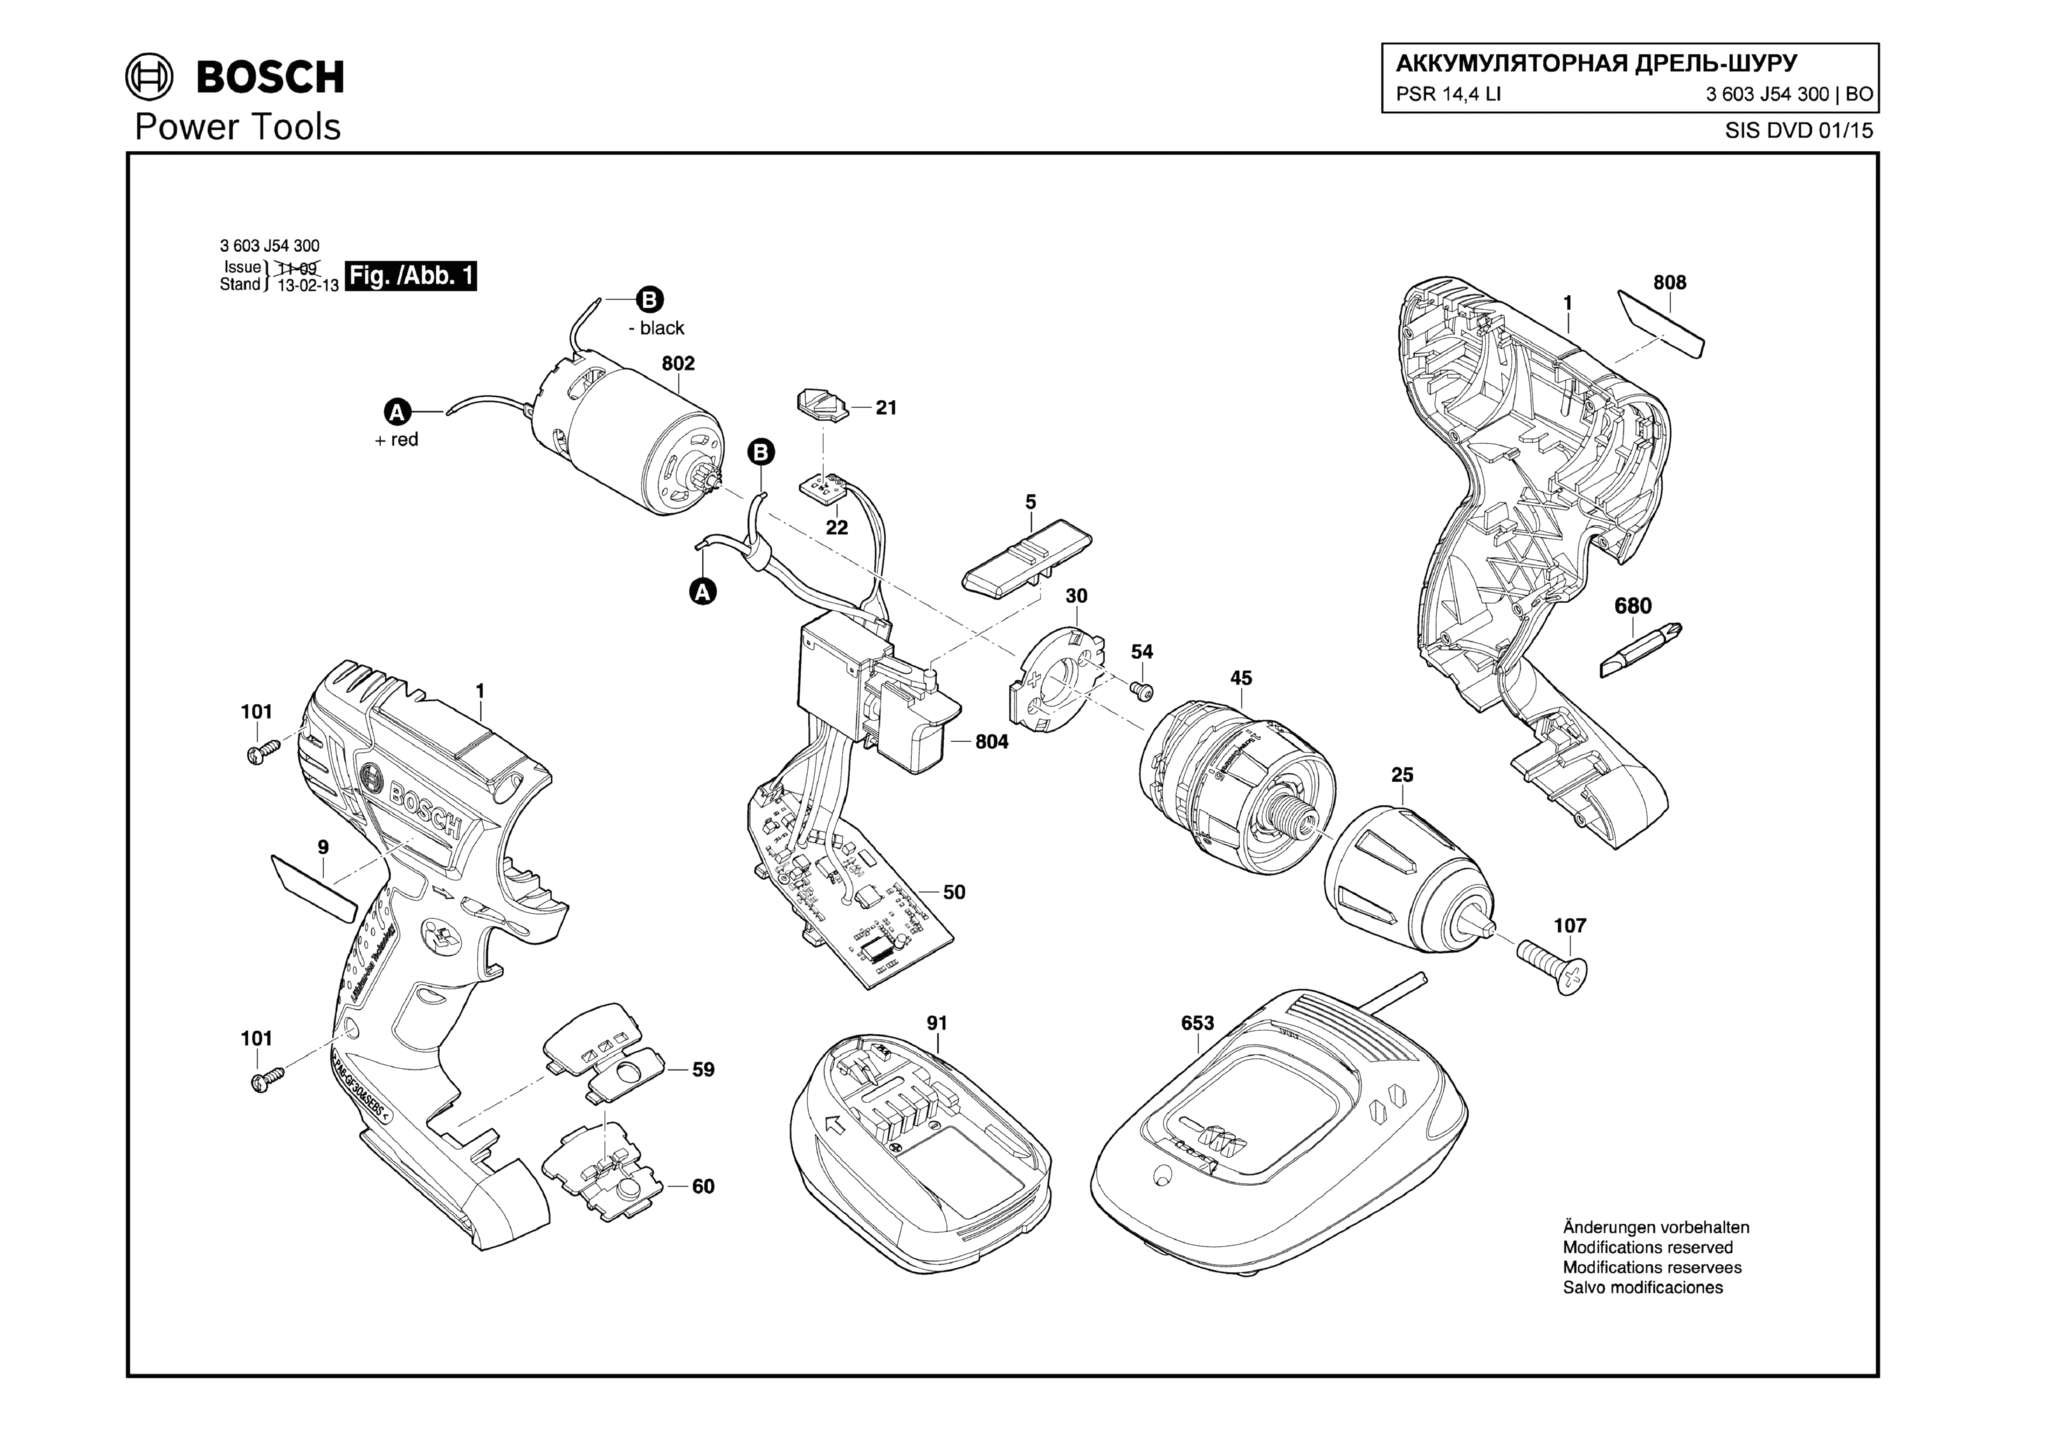 Запчасти, схема и деталировка Bosch PSR 14,4 LI (ТИП 3603J54300)